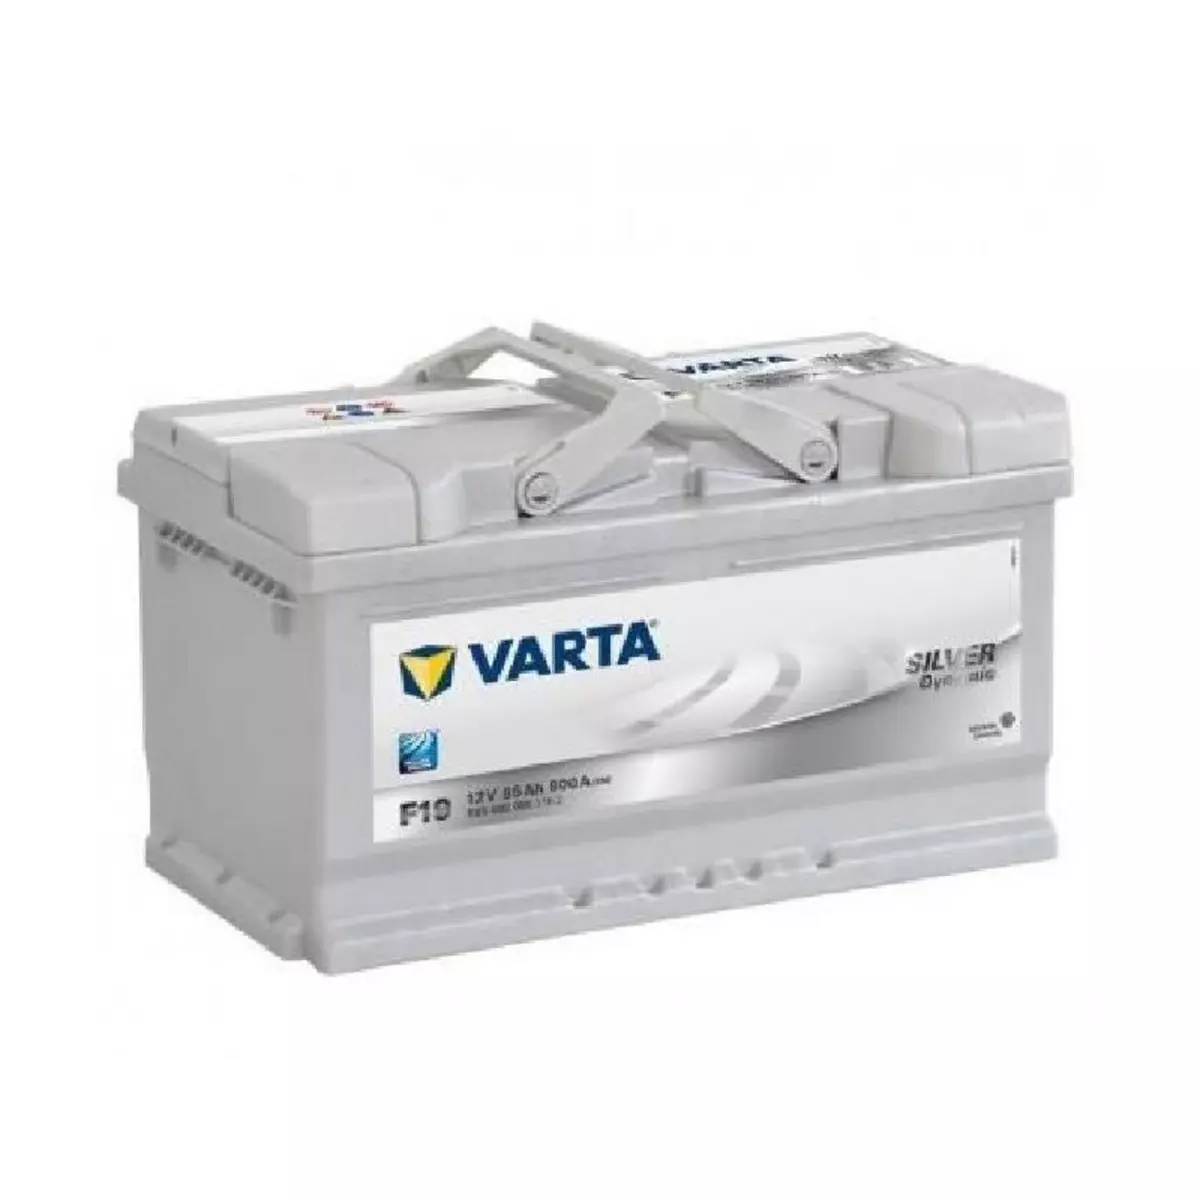 Varta Batterie Varta Silver Dynamic F19 12v 85ah 800A 585 400 080